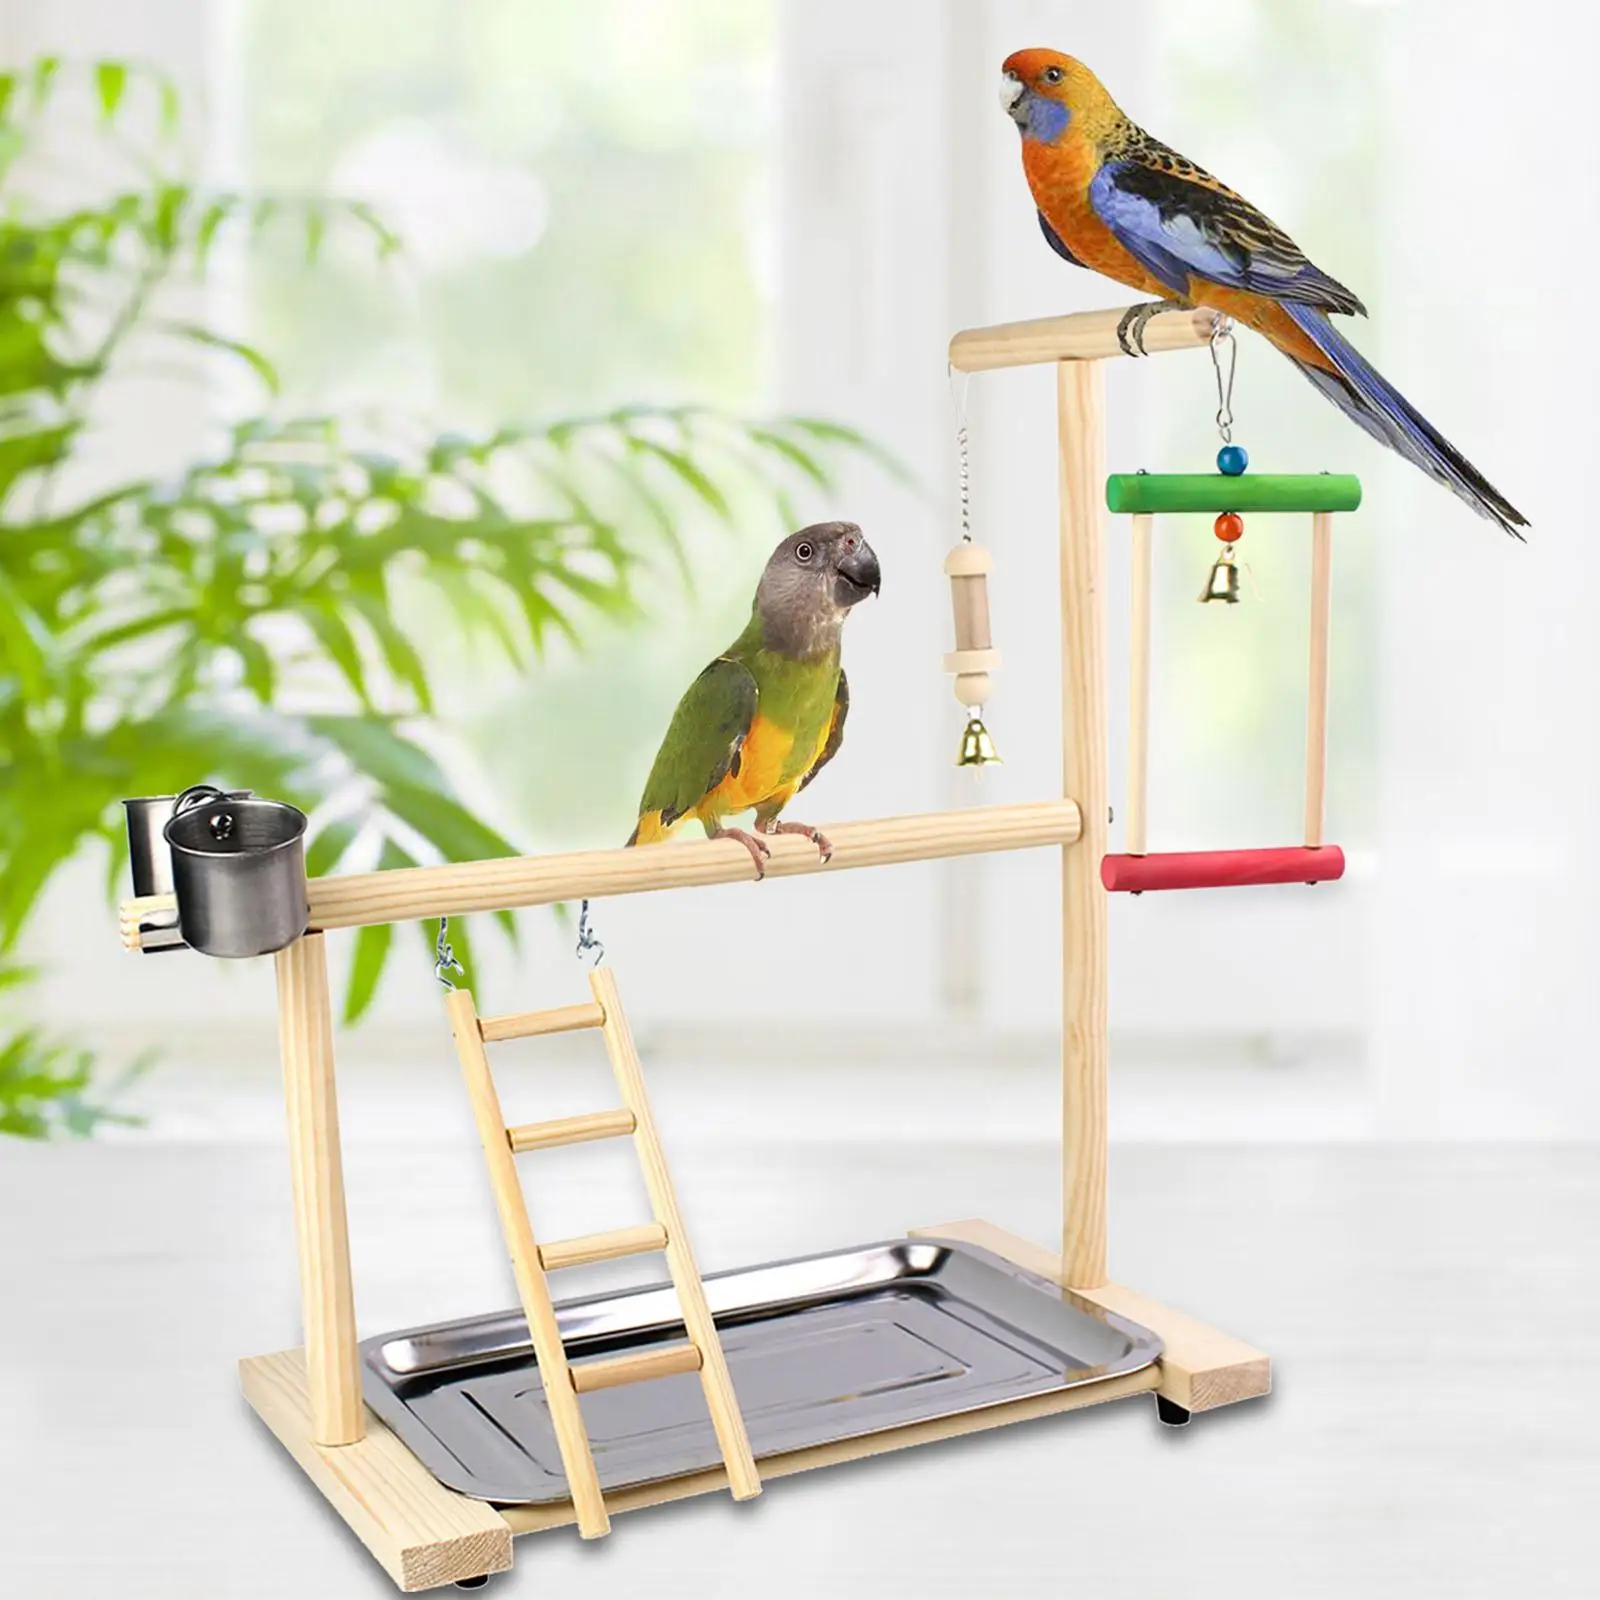 Toys Bird Perch Stand Platform Bird Playground with Feeder Cups Bells Perch Gym Bird Gym Exercise